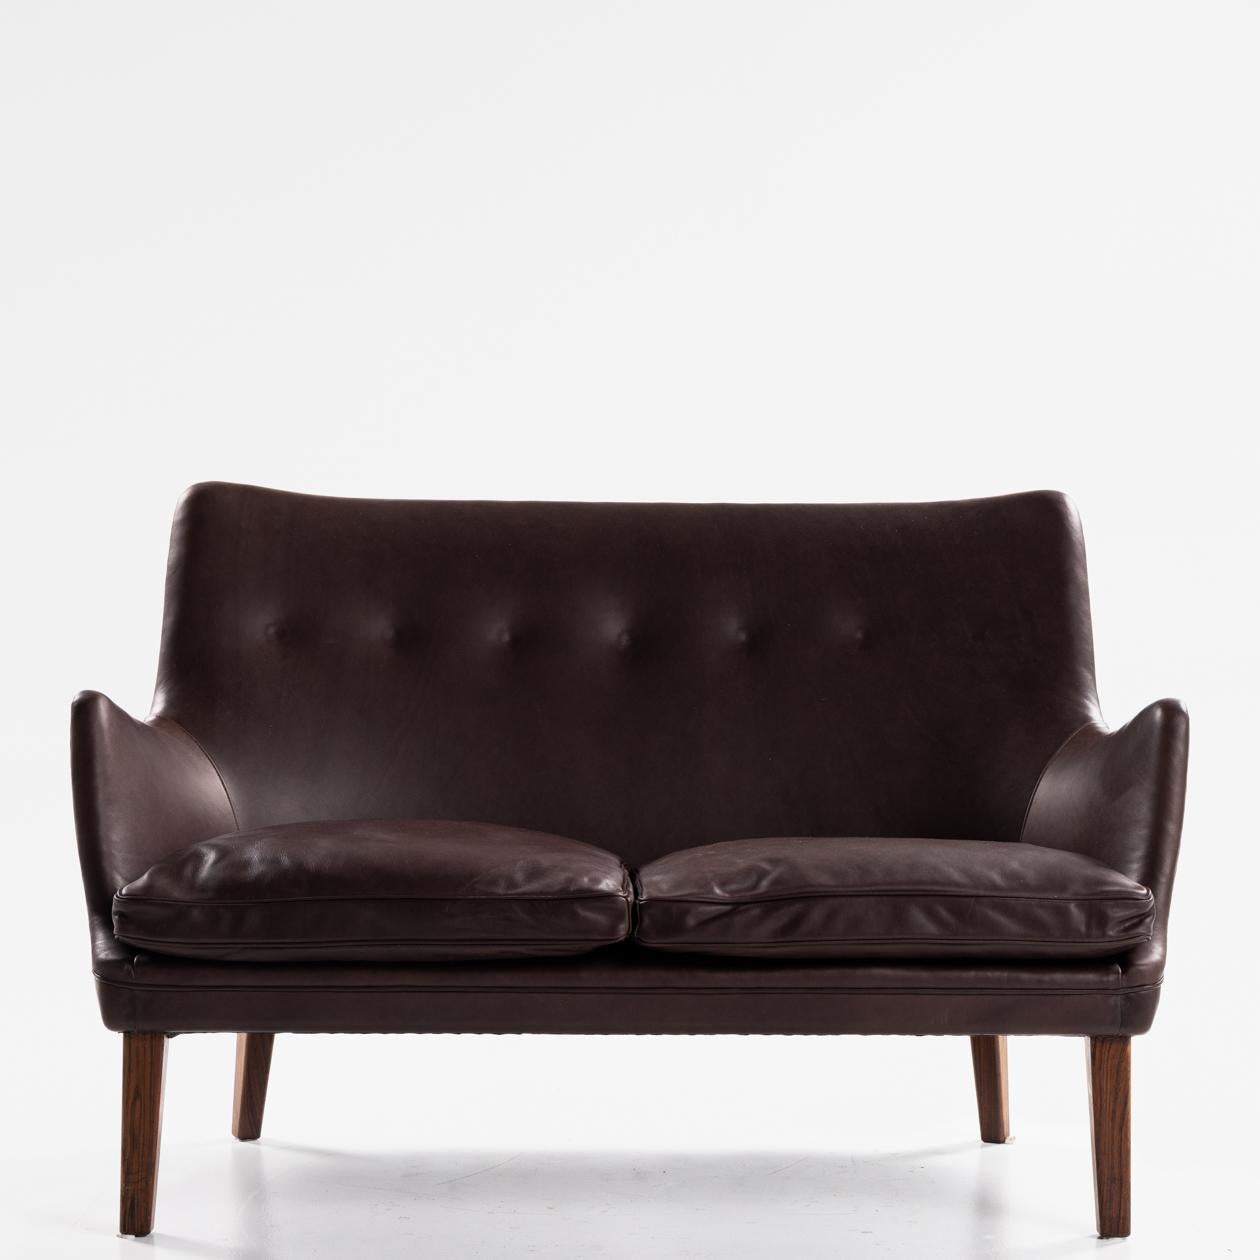 AV 53/2 - 2-Sitzer-Sofa in neuem Anilinleder (Victoria, Farbe: Ebenholz) mit Beinen aus massivem brasilianischem Palisanderholz. Arne Vodder / Ivan Schlechter.